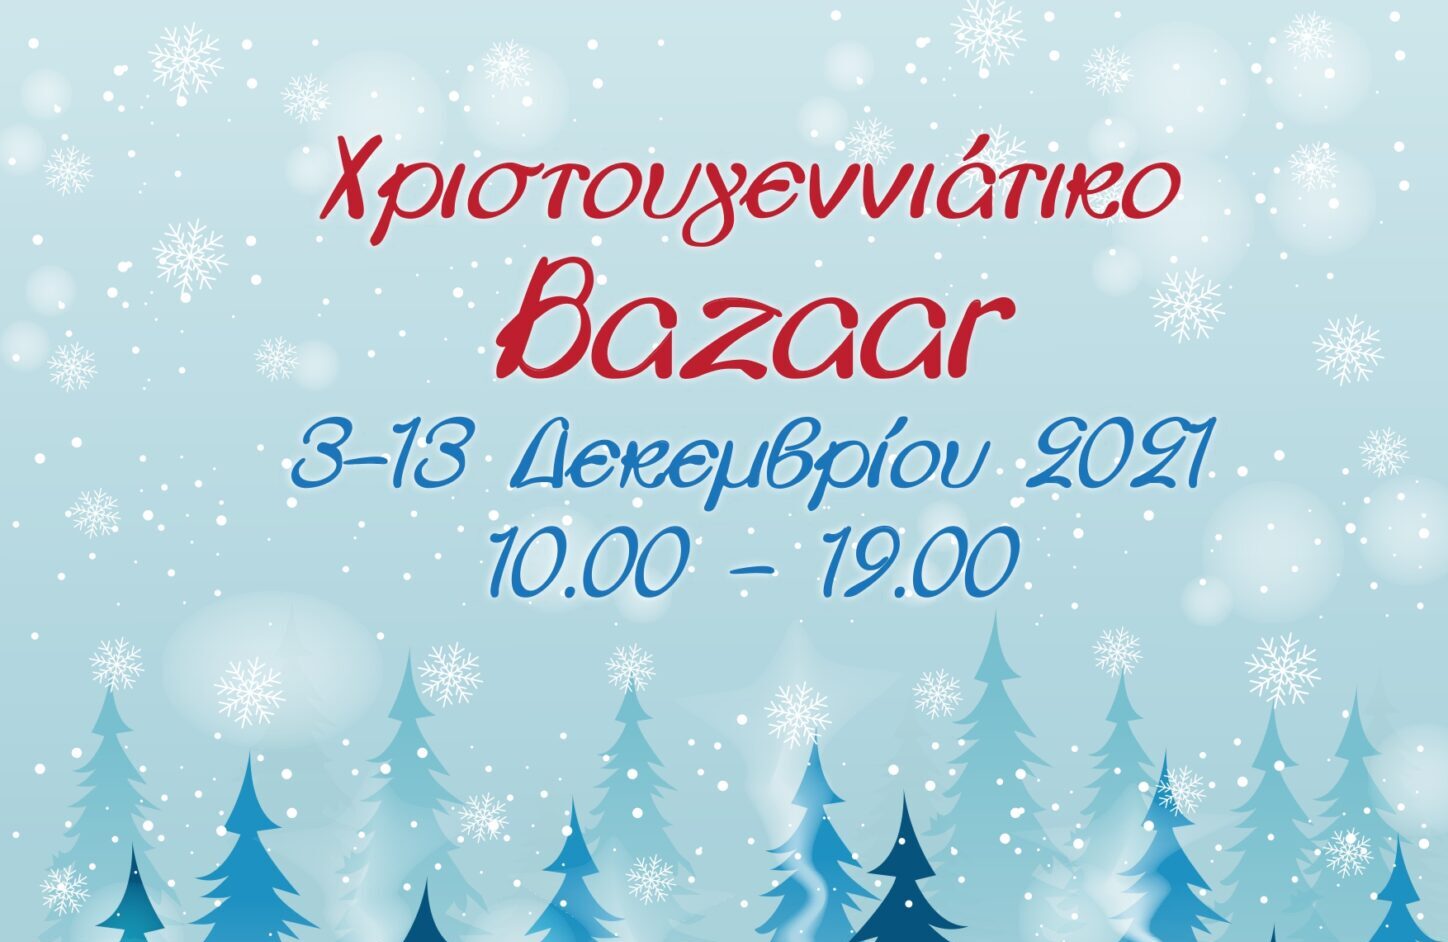 ΑγκαλιάΖΩ: Χριστουγεννιάτικο Bazaar 3-13/12 για οικονομική ενίσχυση άπορων και ανασφάλιστων καρκινοπαθών